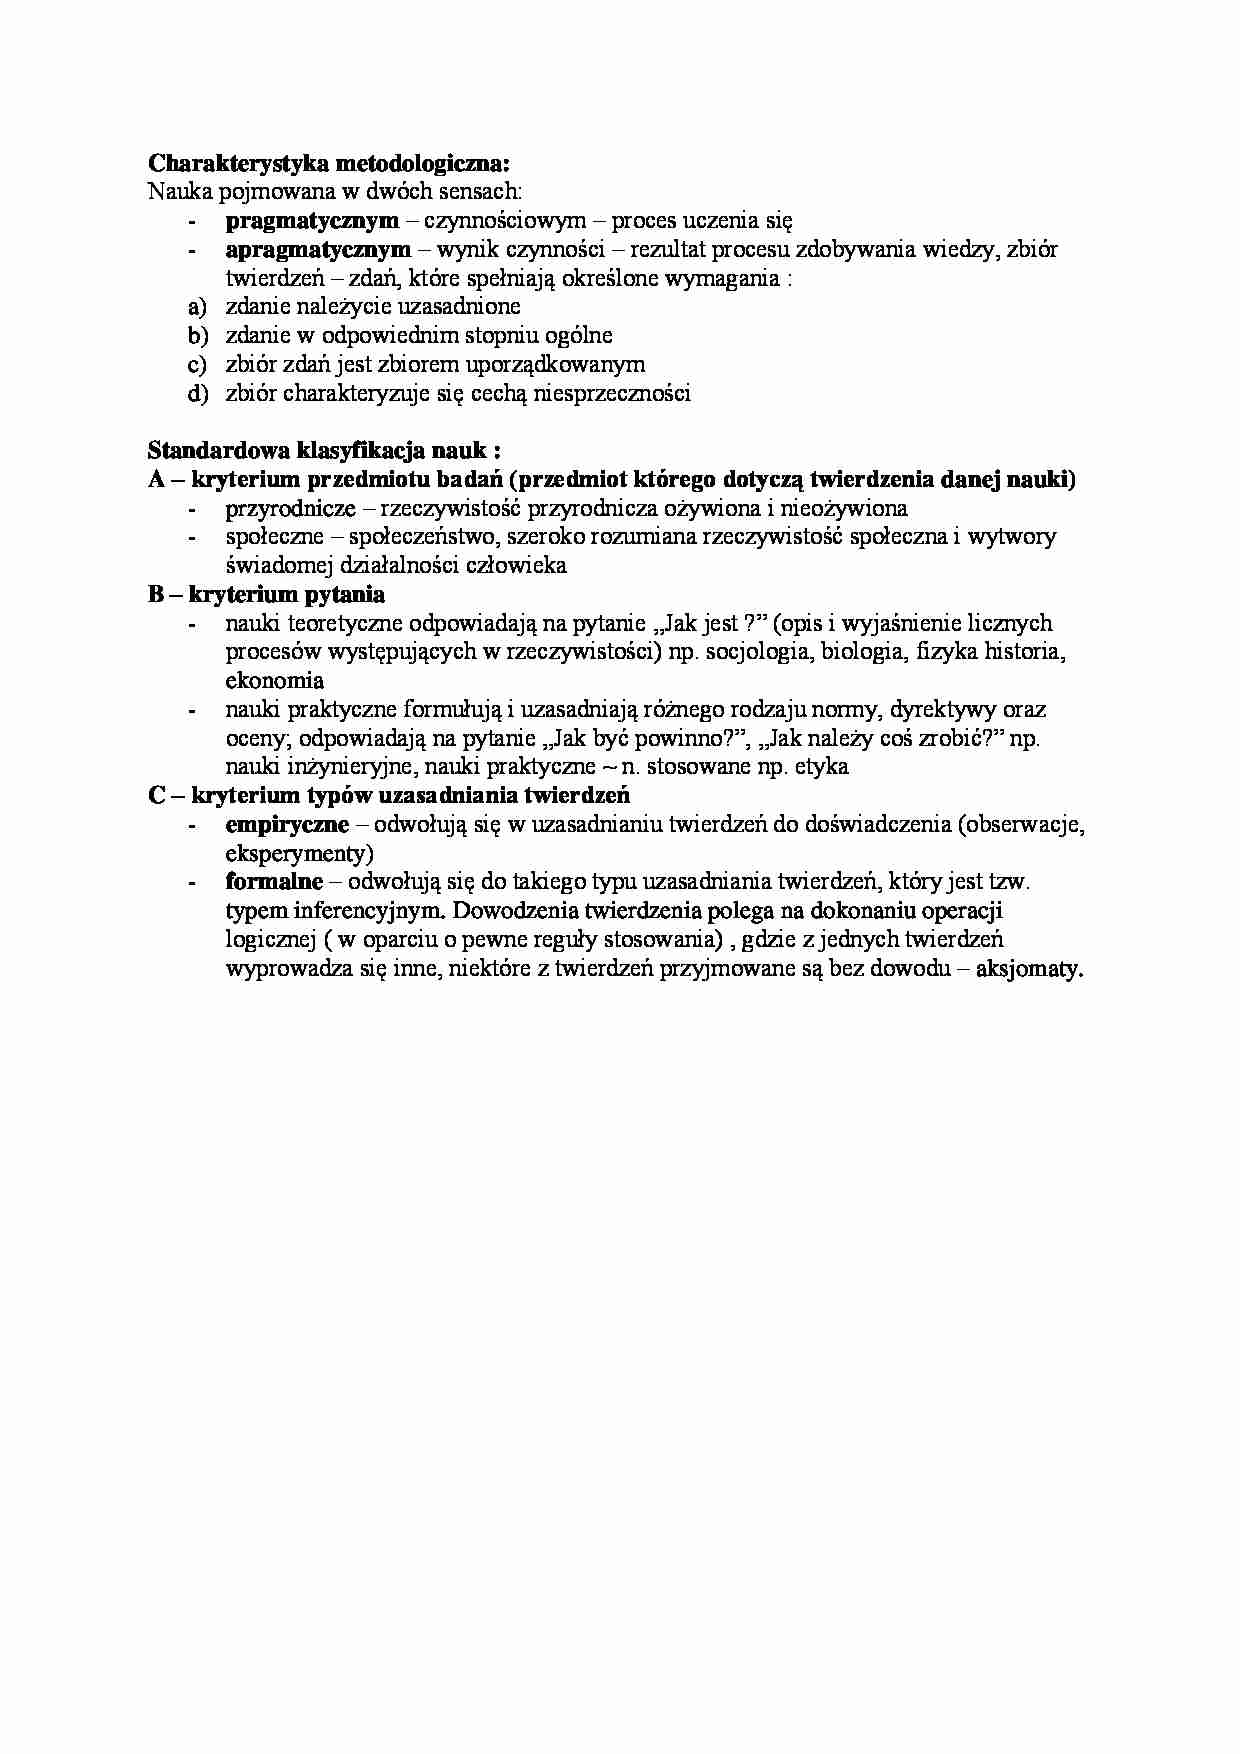 Charakterystyka metodologiczna - wykład - strona 1